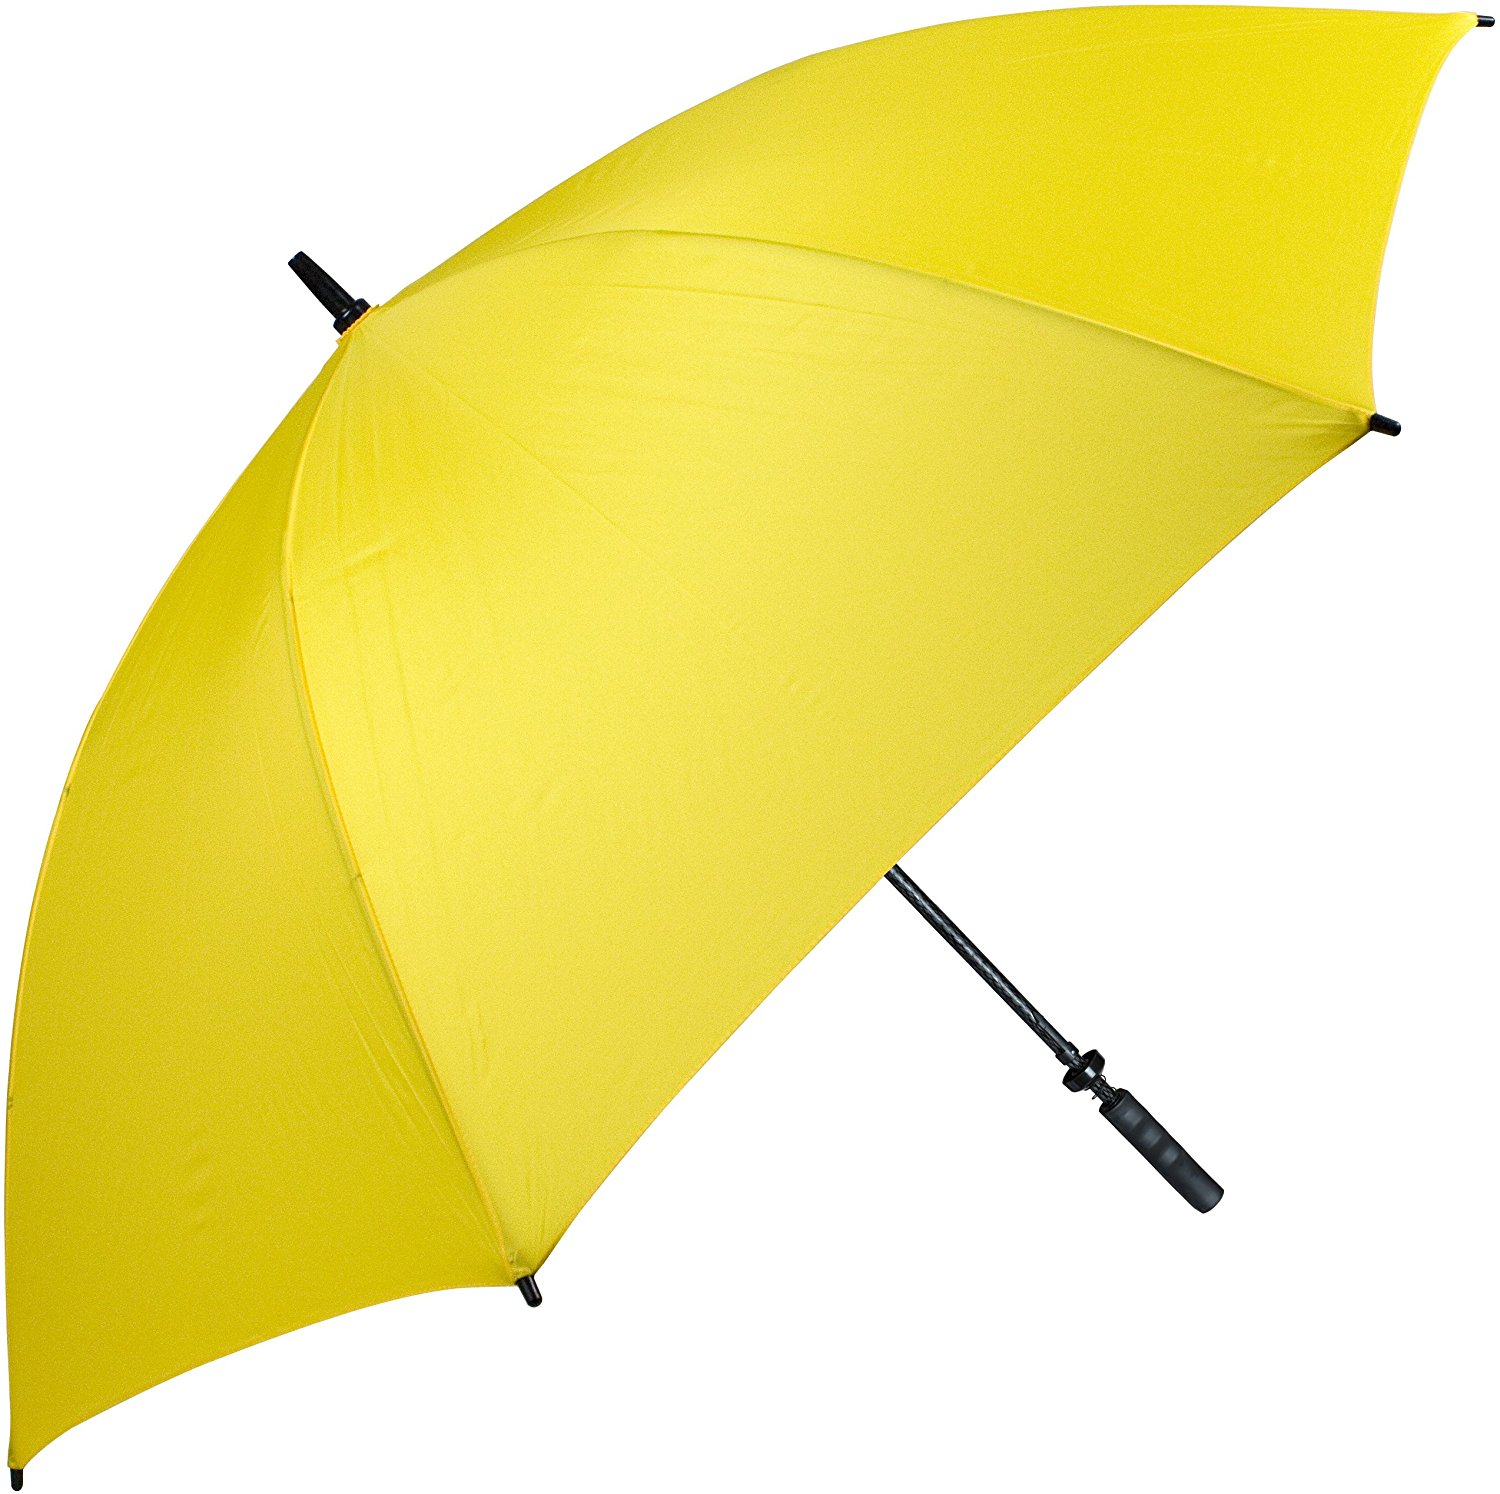 Желтый зонтик. Зонтик фото. Желтый зонт для загорания. Зонт желтый хамелеон. Зонт желтого цвета